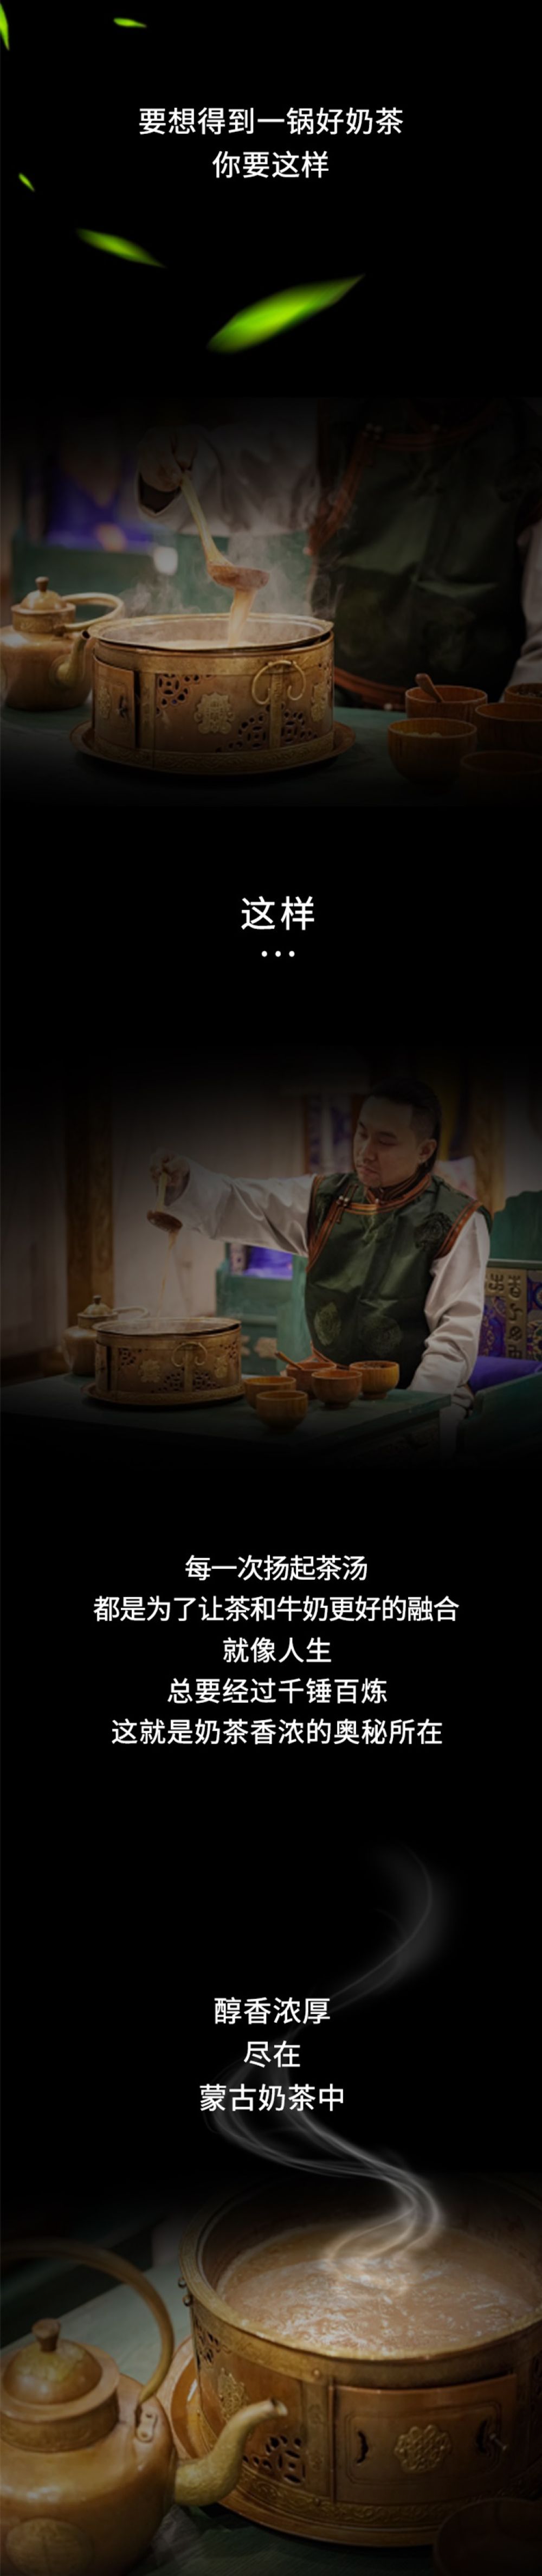 首届国际茶日内蒙古系列活动——奶与茶 万里相约